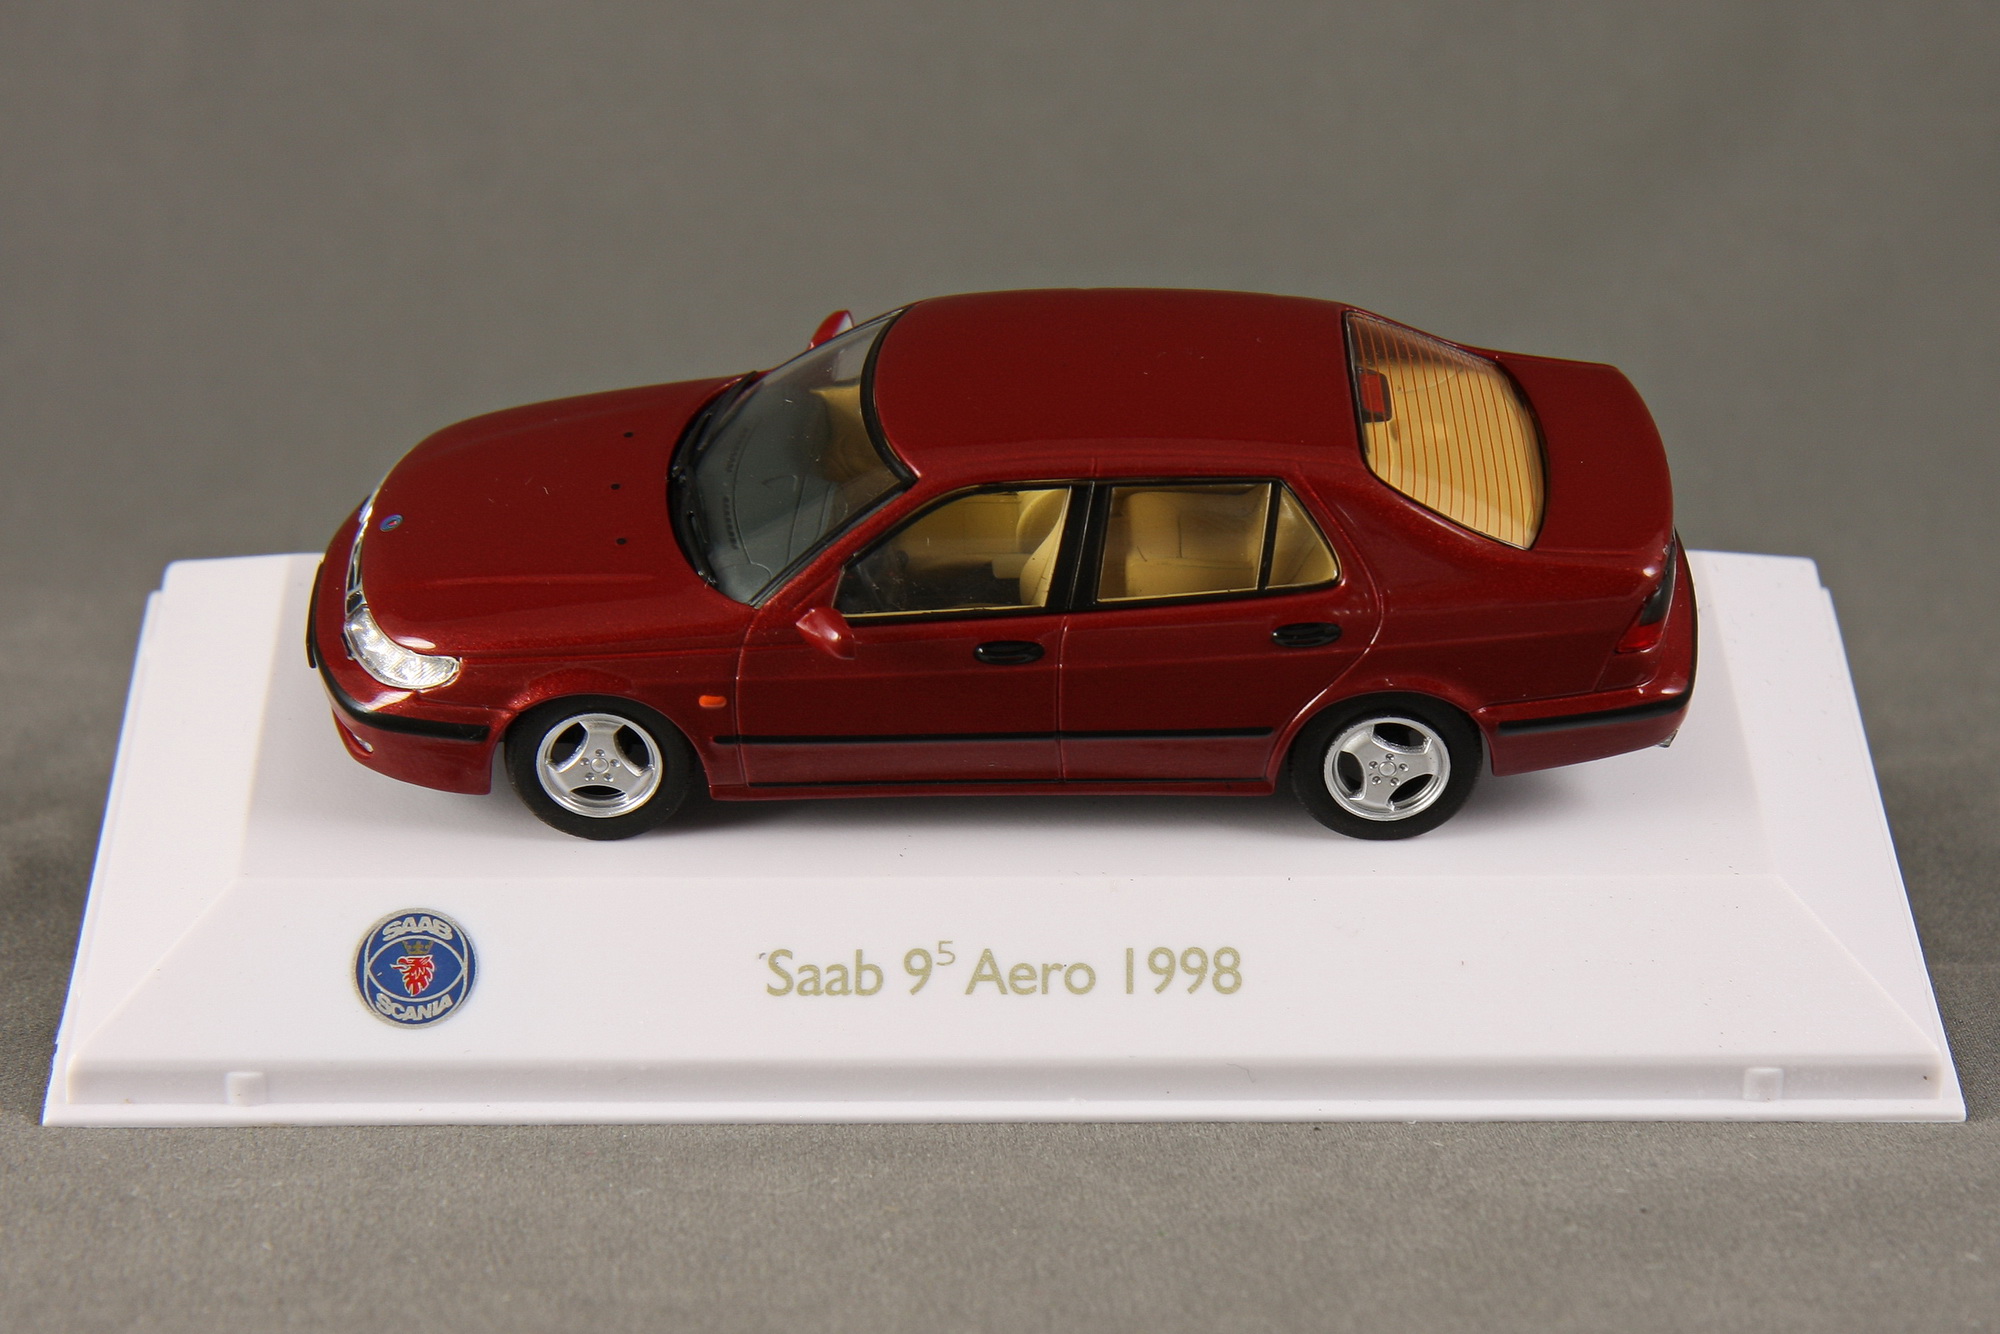 9-5 - 1999 Sedan Aero Bild 8